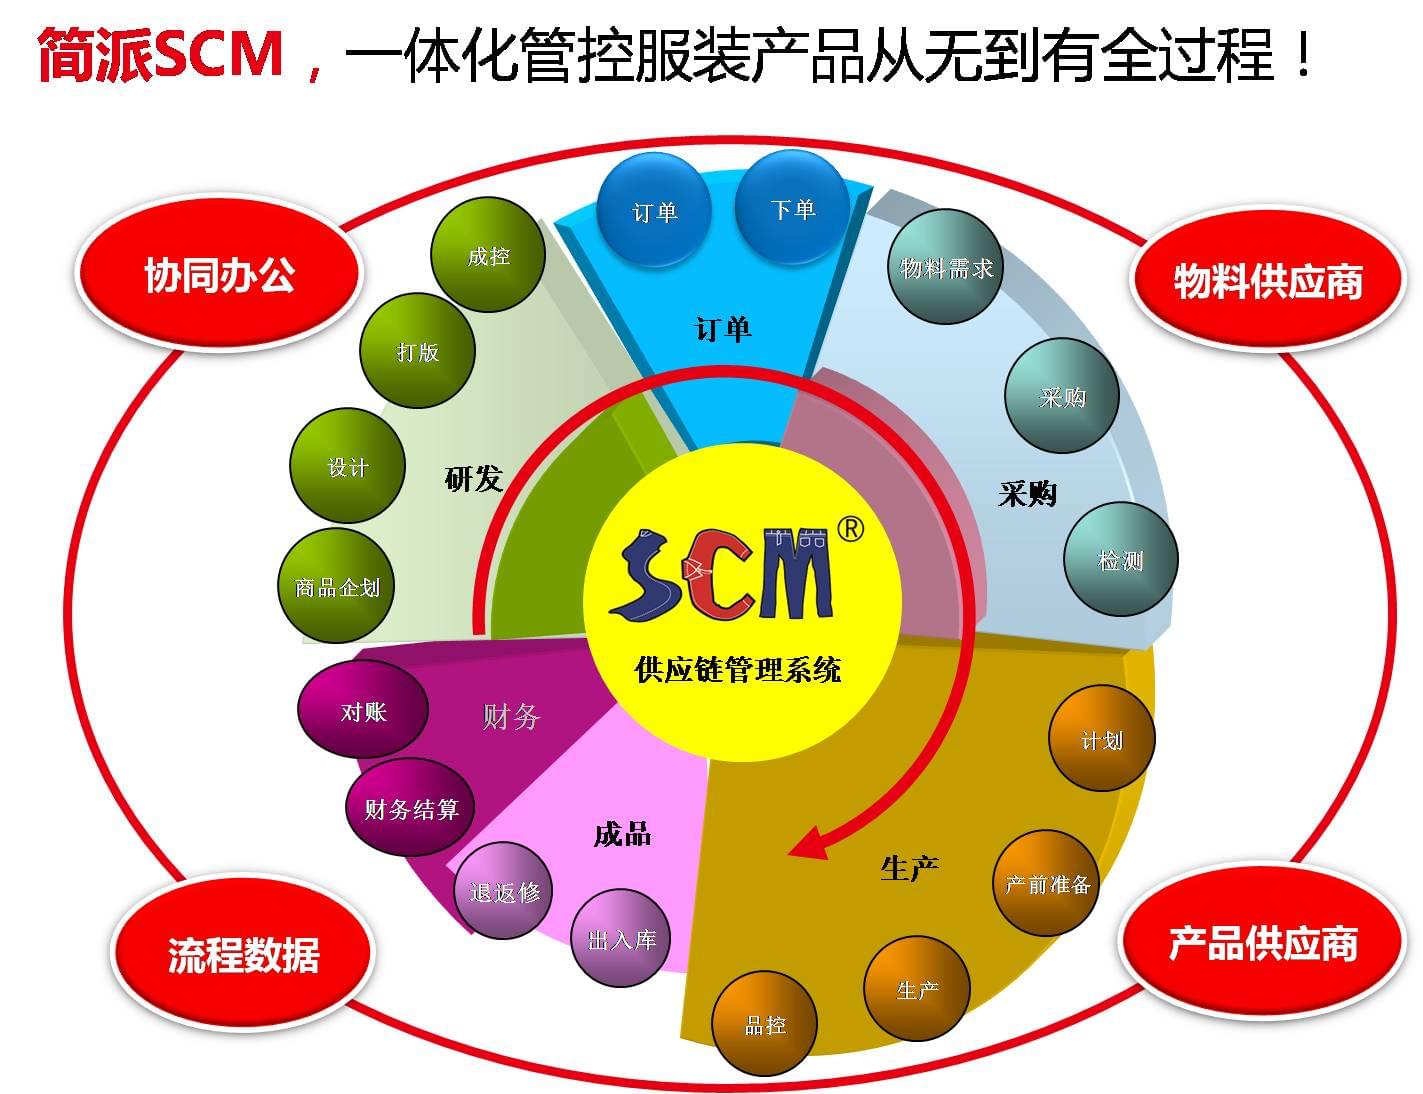 浙江罗伊服饰,丰捷SCM服装供应链管理系统,简派SCM供应链管理系统